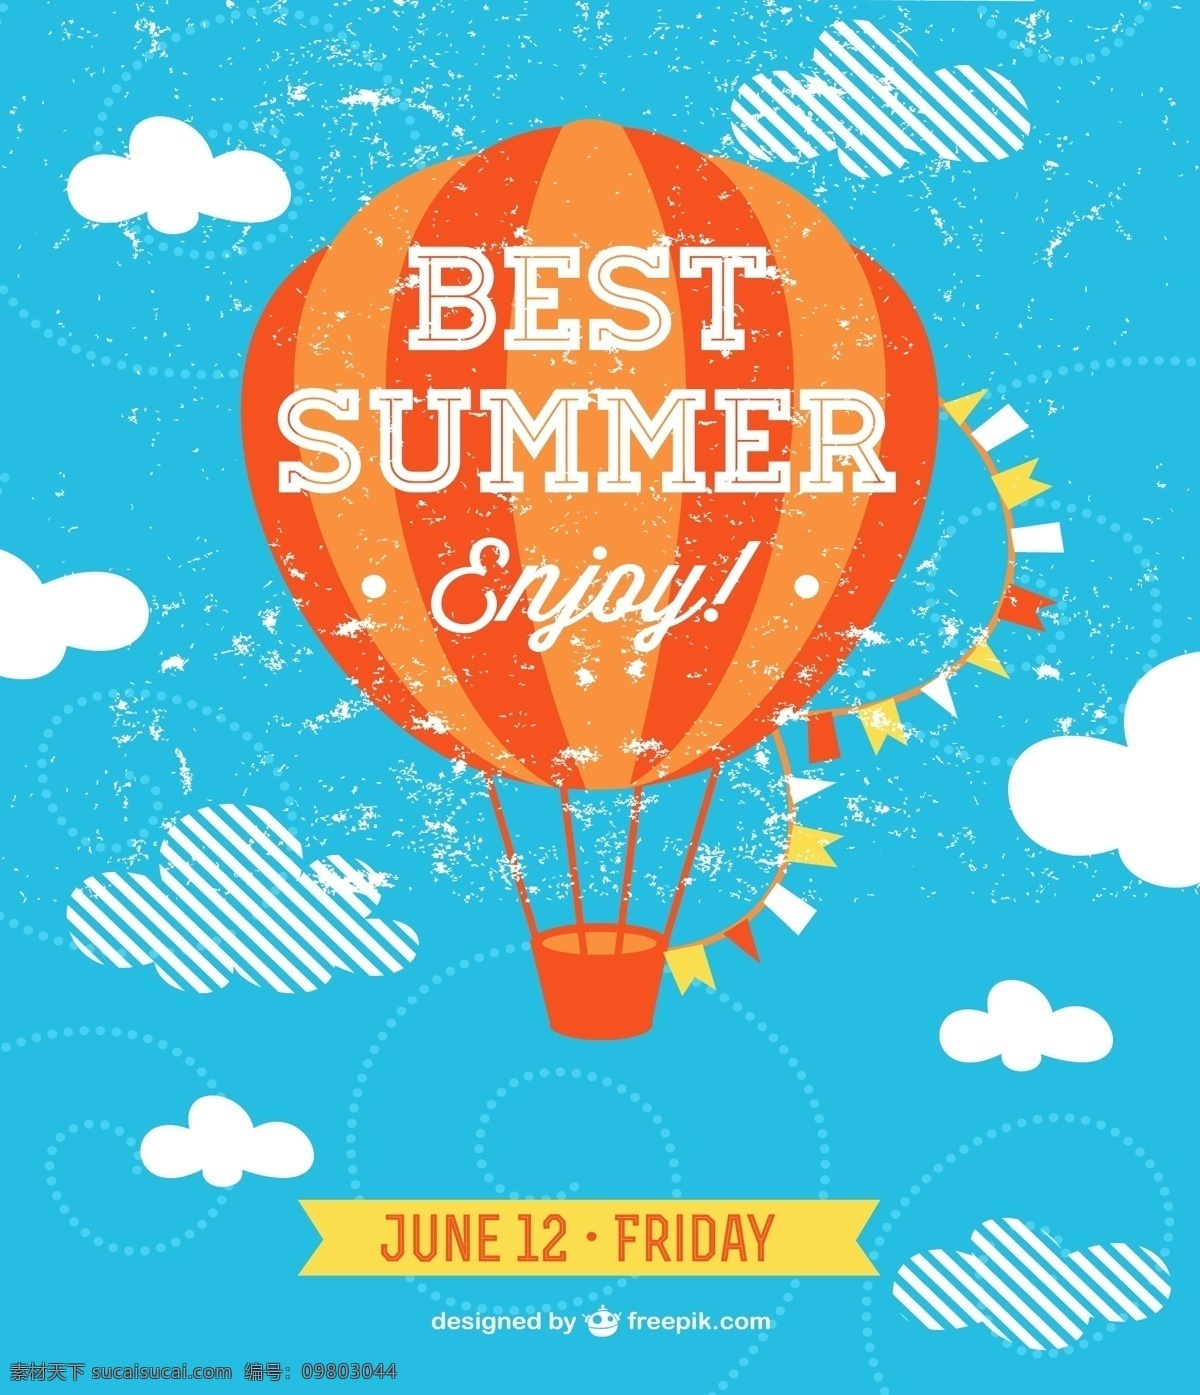 最好 夏季 聚会 邀请 热气球 背景 夏天 天空 艺术 气球 壁纸 图形 平面设计 假期 插图 飞行 航空 图像 航空气球 季节 青色 天蓝色